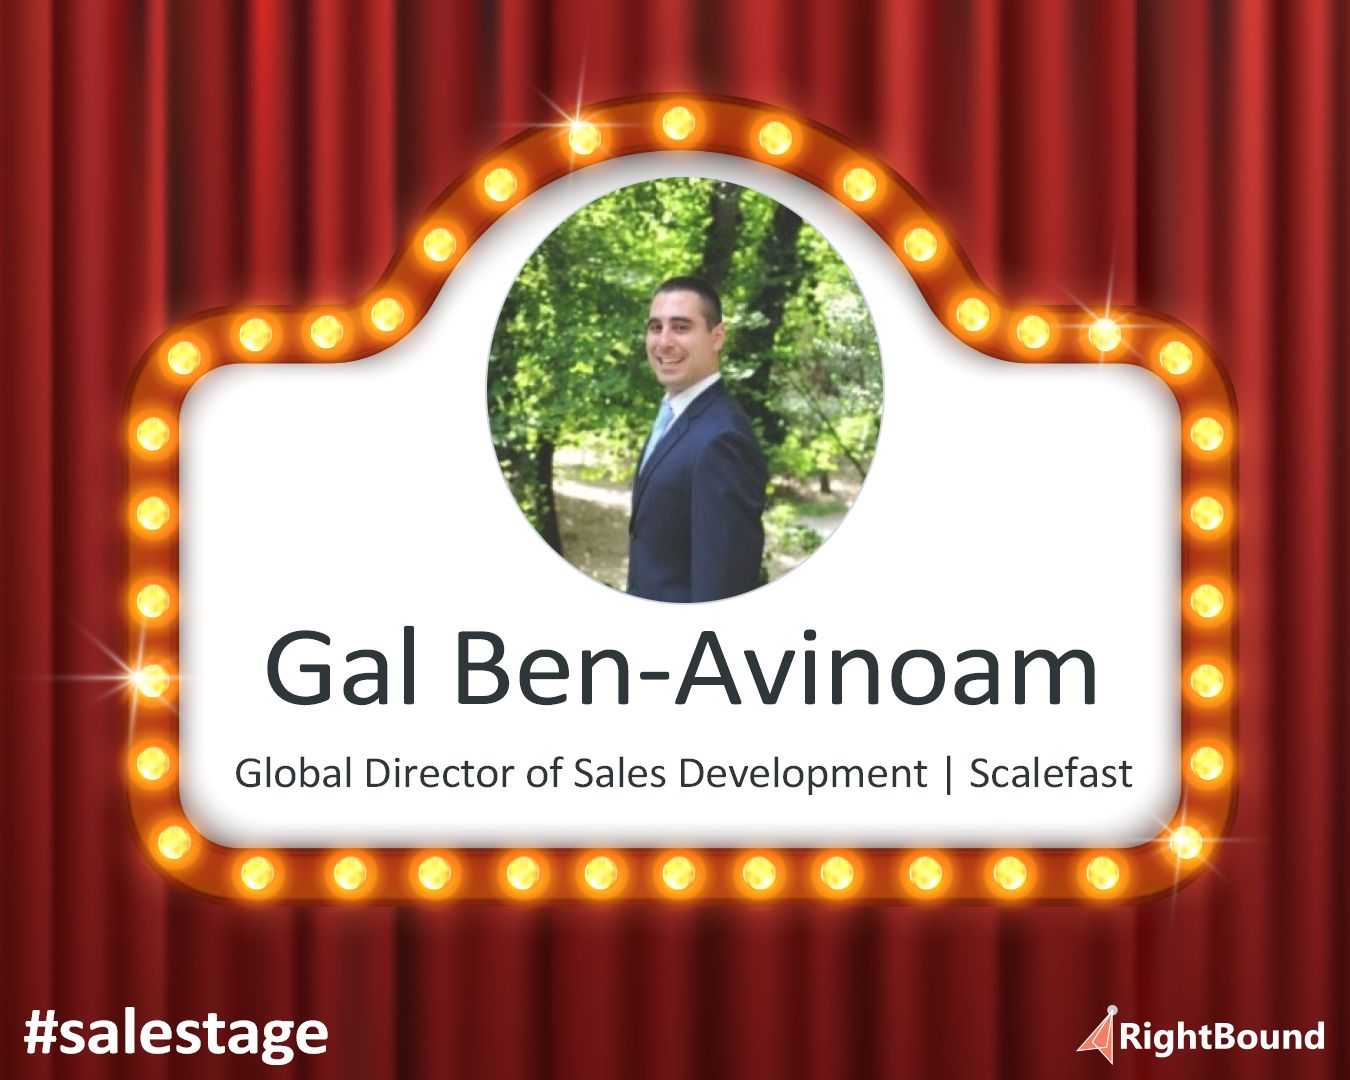 Gal Ben-Avinoam - Global Director of Sales Development at Scalefast